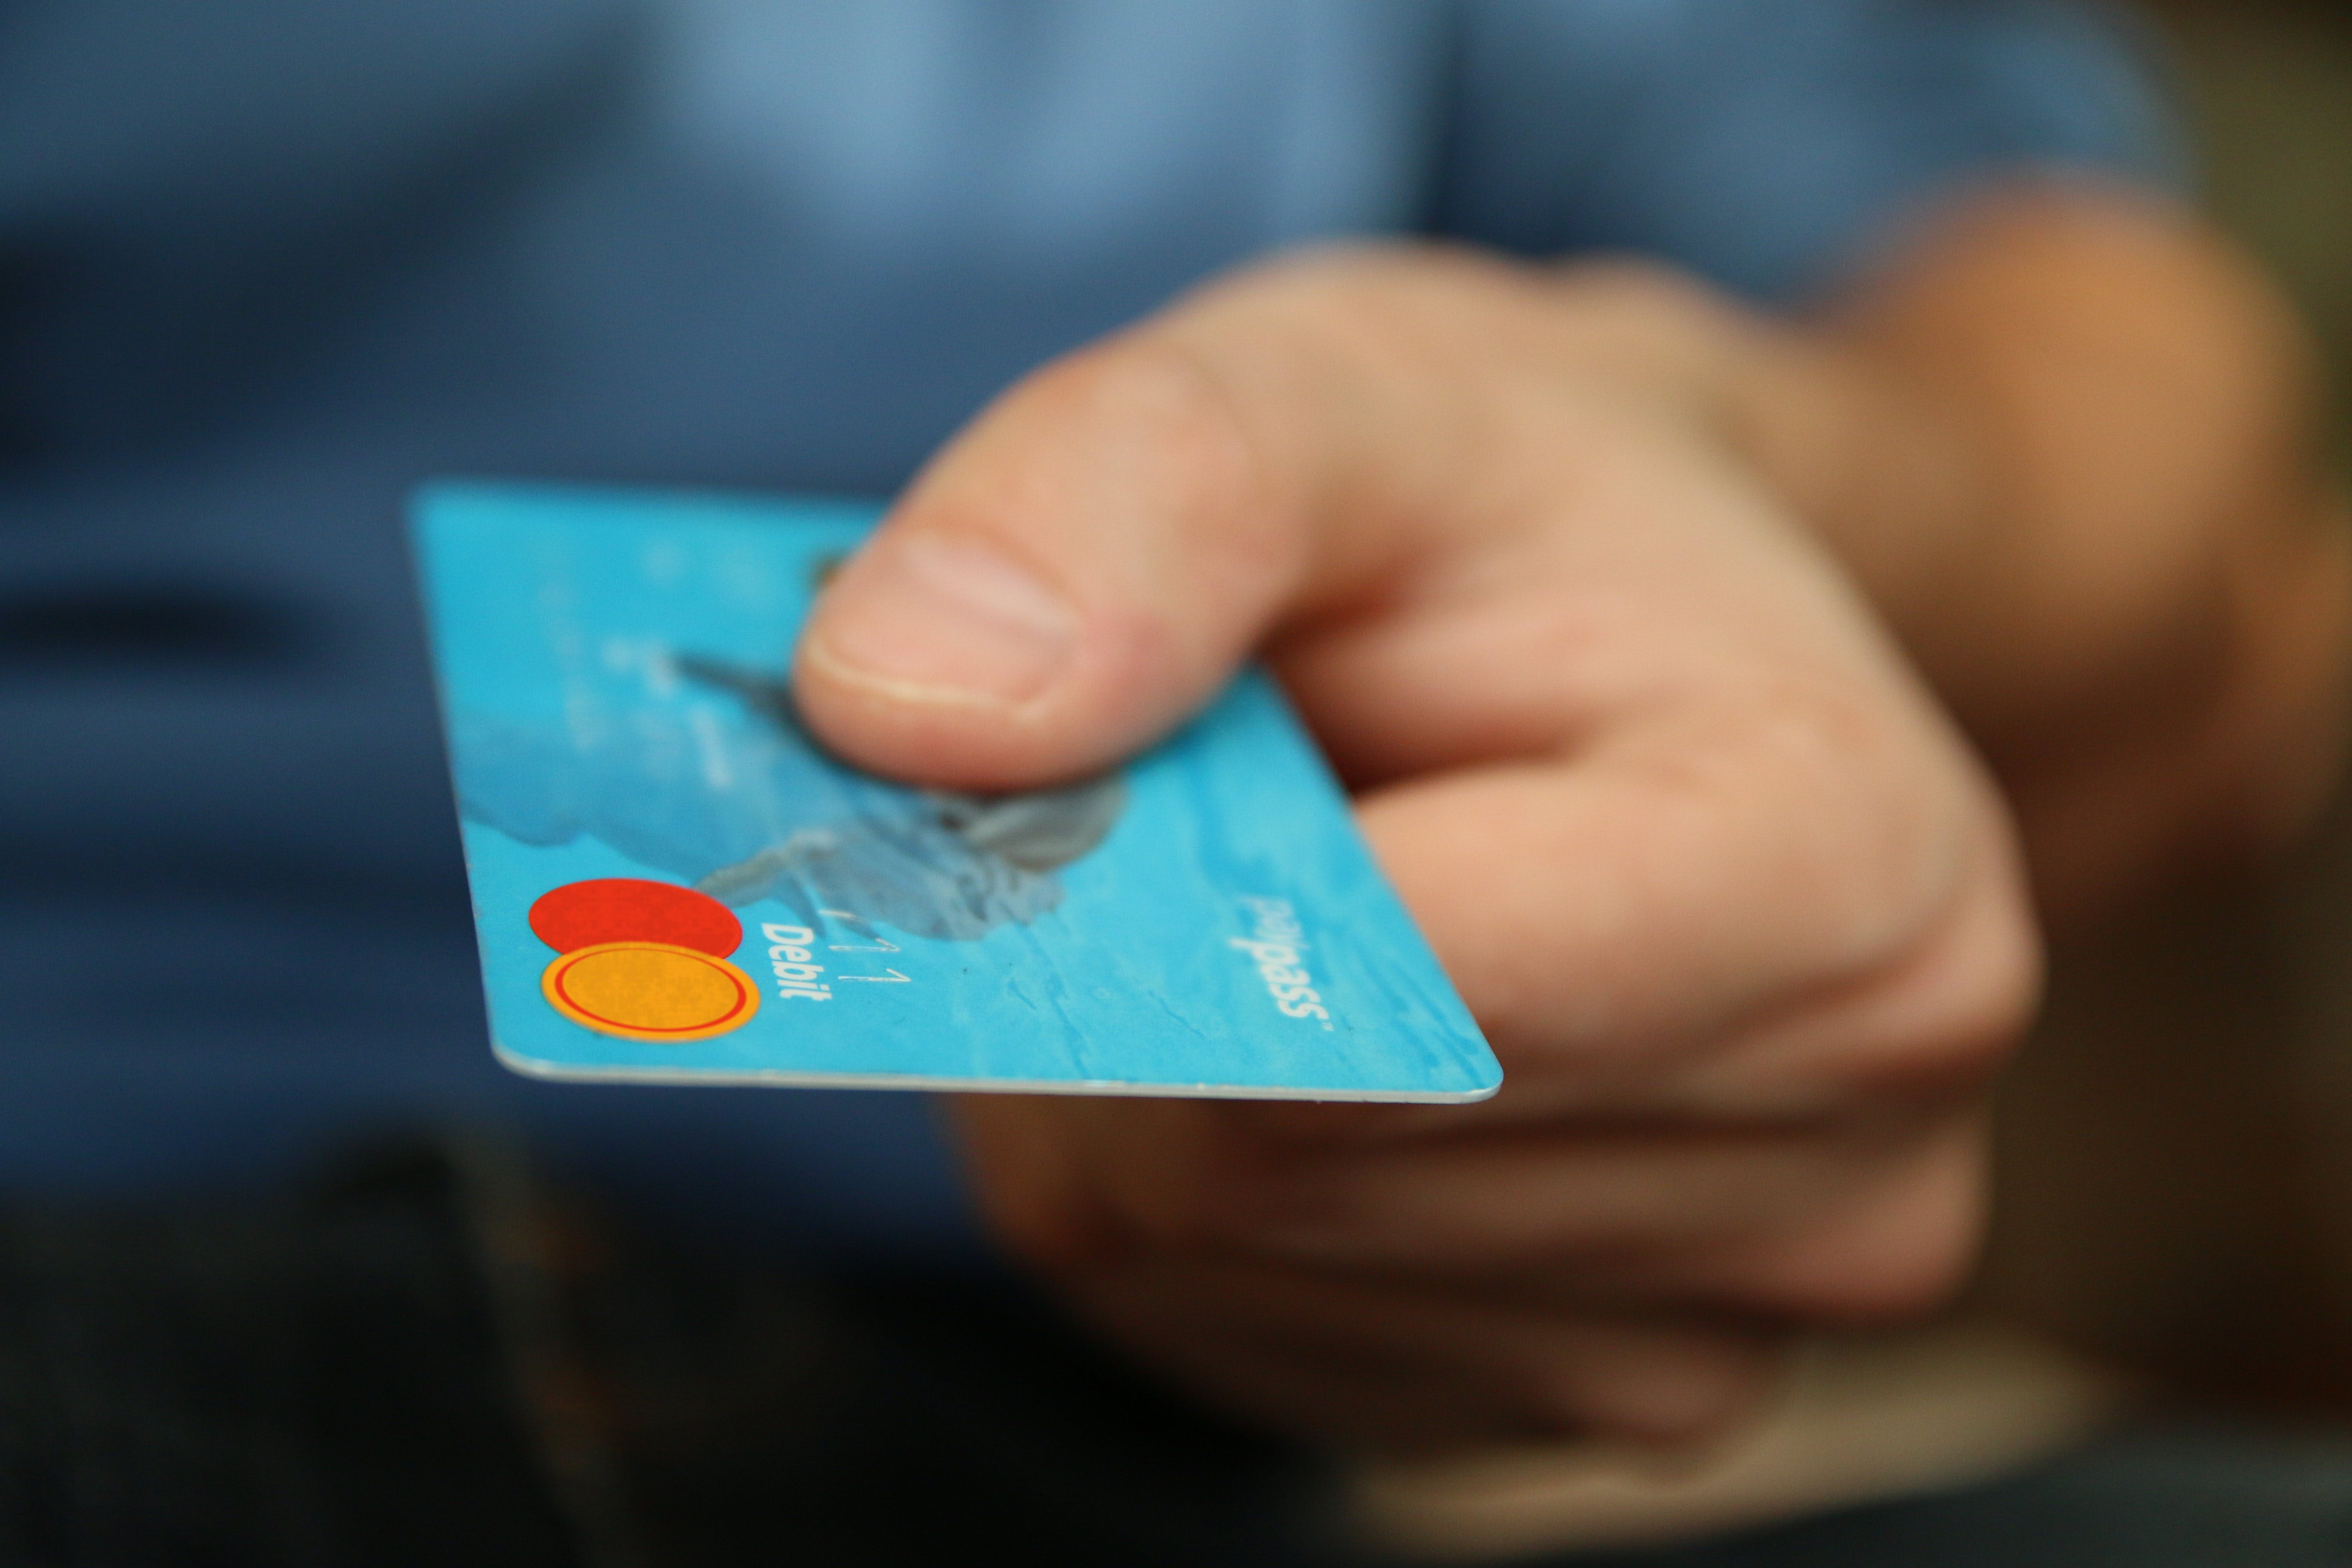 Une personne tenant une carte bancaire | Source : Pexels